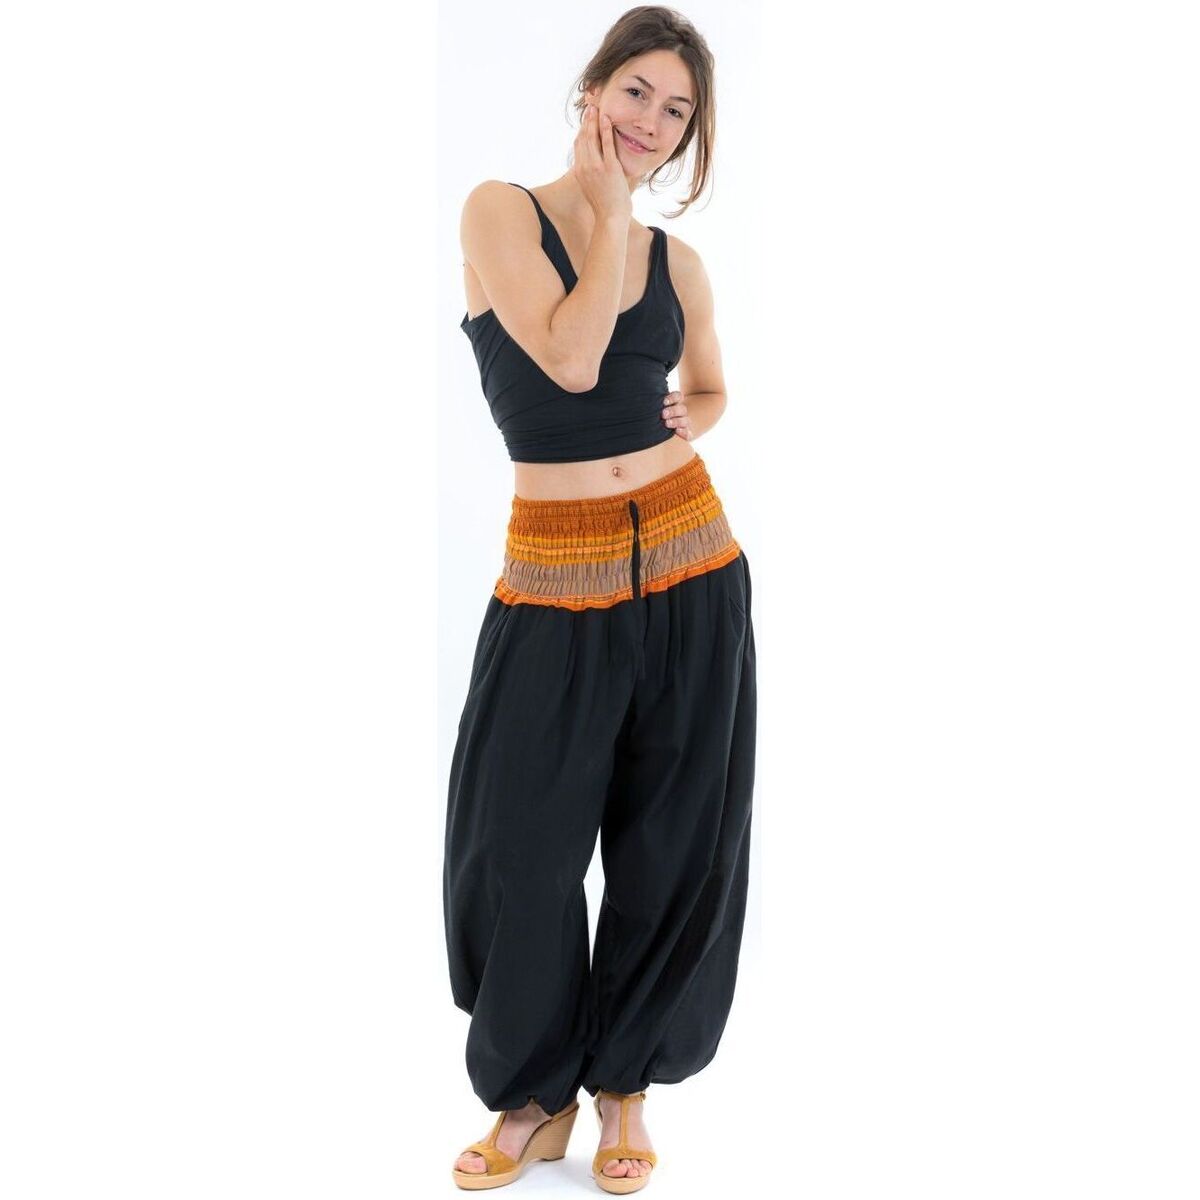 Vêtements Femme Connectez vous ou créez un compte avec Pantalon sarouel indian chic sari orange Noir